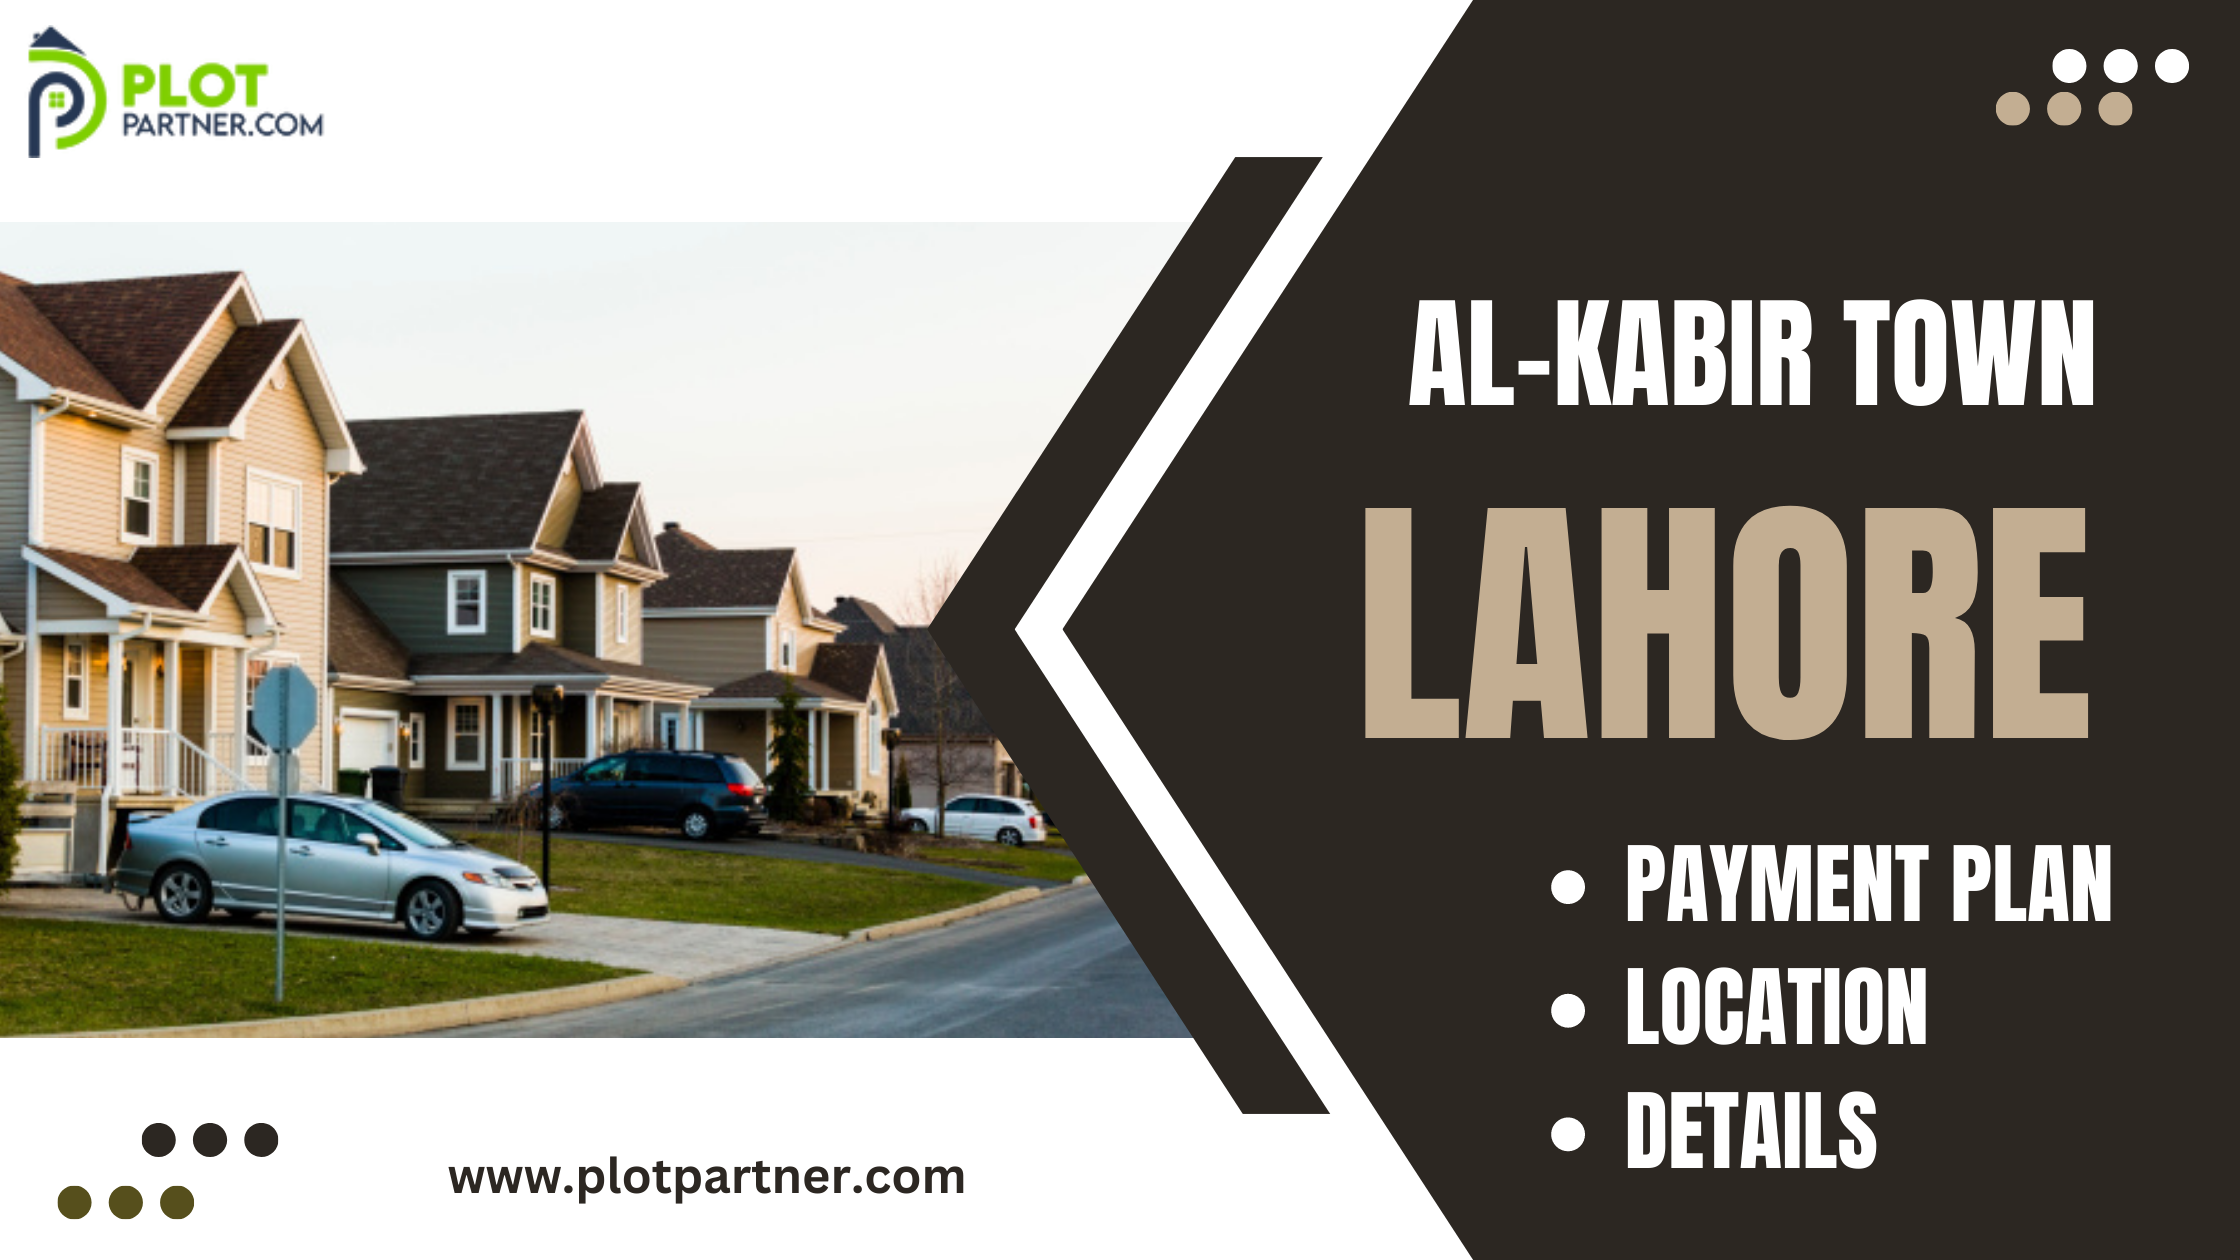 Al-Kabir Town, Lahore. Payment Plan, Location, Details